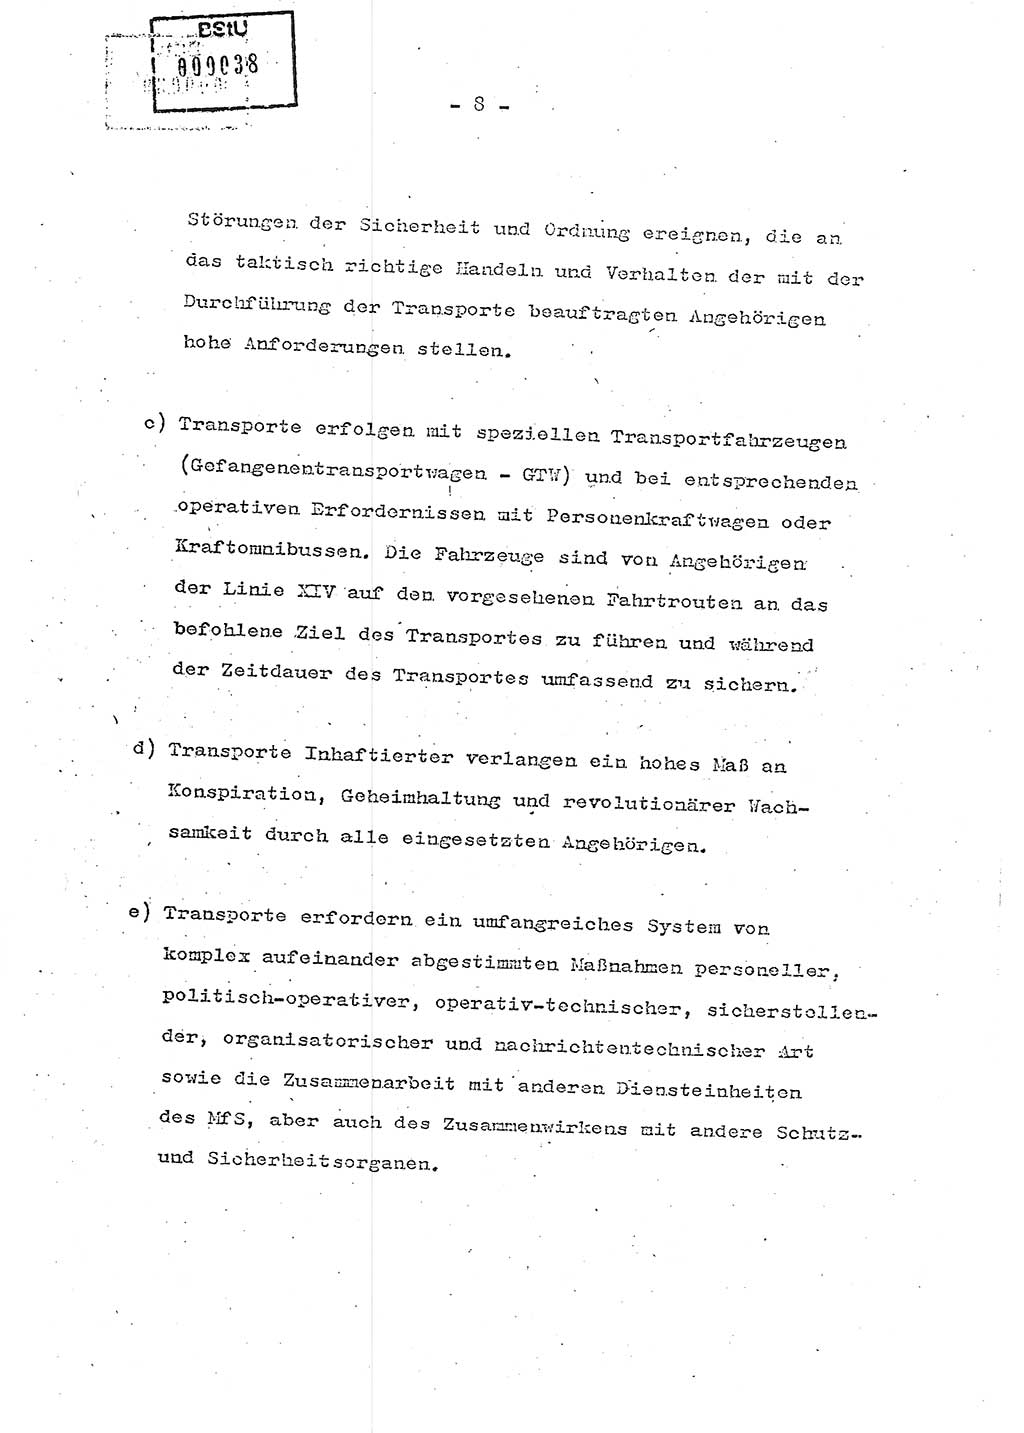 Schulungsmaterial Exemplar-Nr.: 7, Ministerium für Staatssicherheit [Deutsche Demokratische Republik (DDR)], Abteilung (Abt.) ⅩⅣ, Berlin 1986, Seite 8 (Sch.-Mat. Expl. 7 MfS DDR Abt. ⅩⅣ /86 1986, S. 8)